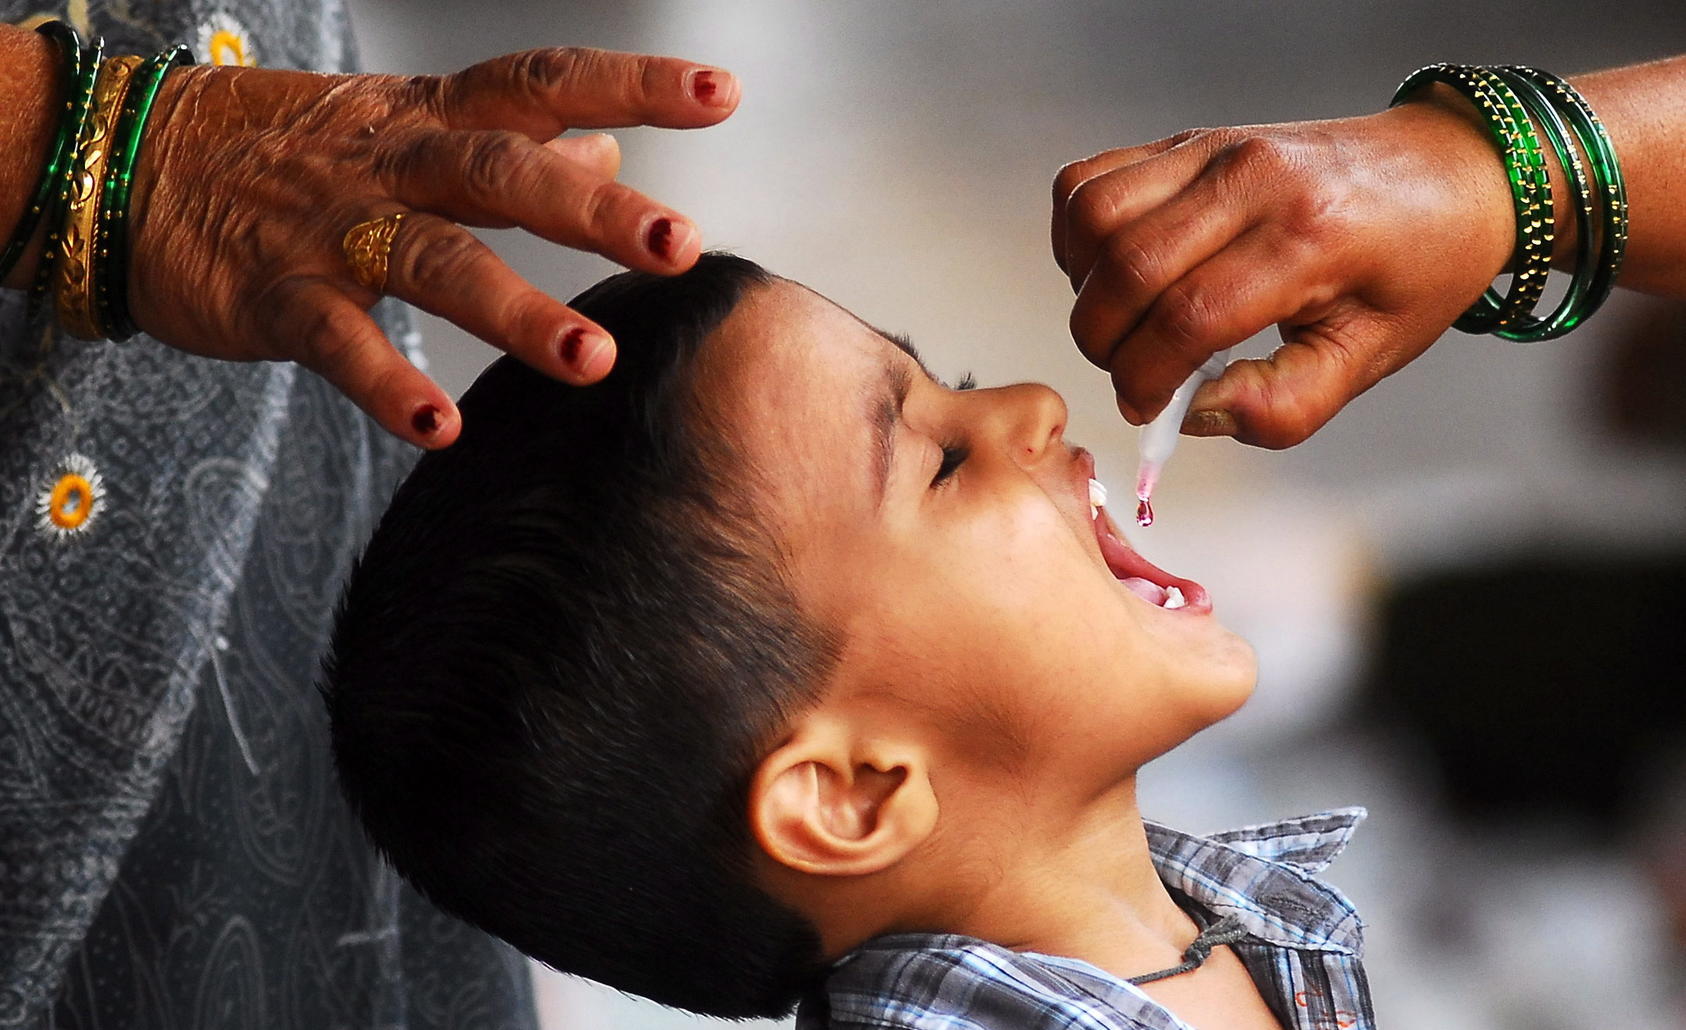 polio-gilt-in-grobritannien-wie-auch-im-rest-europas-eigentlich-seit-jahrzehnten-offiziell-als-ausgerottet